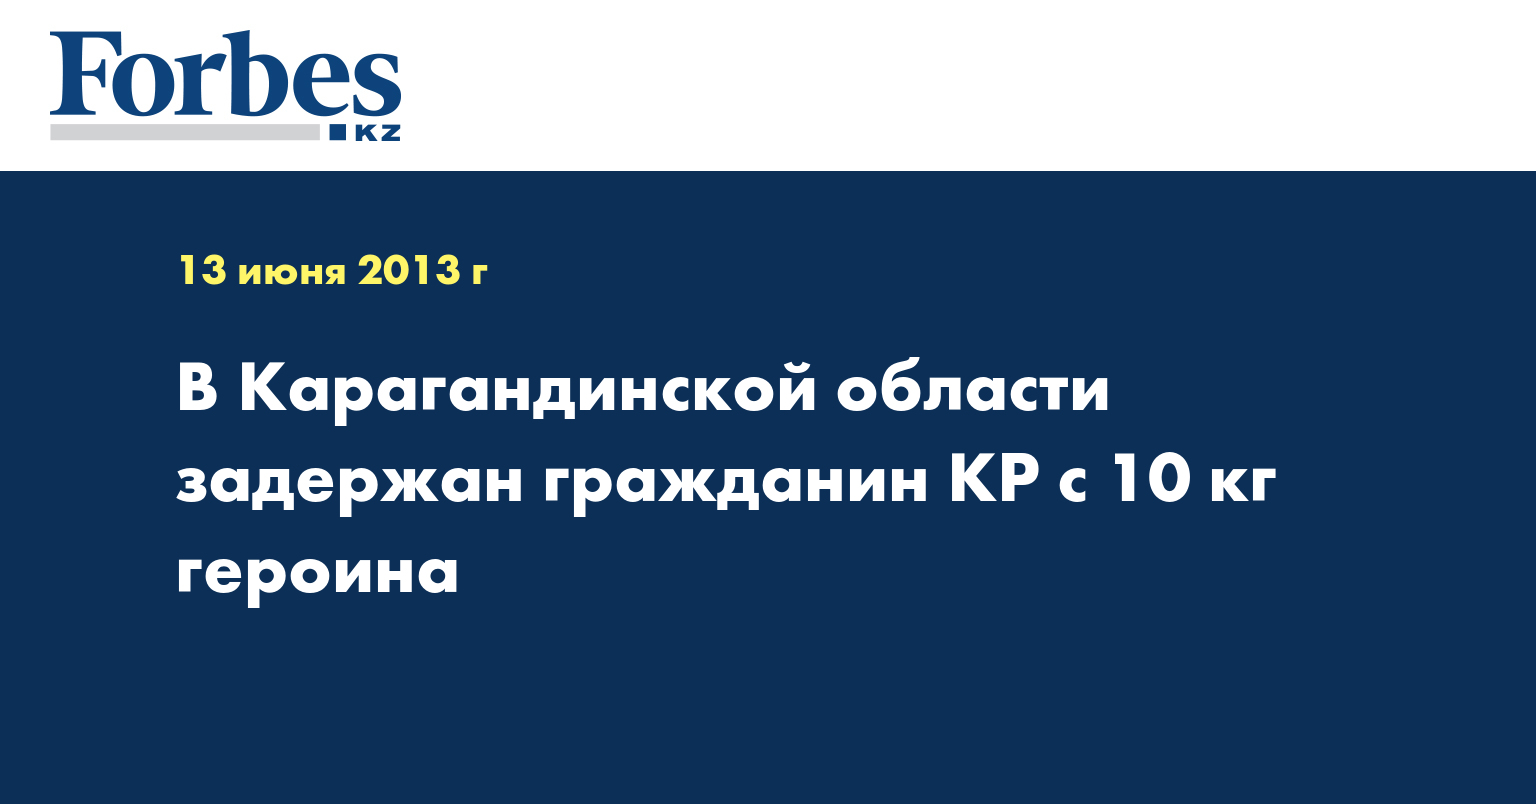 В Карагандинской области задержан гражданин КP с 10 кг героина